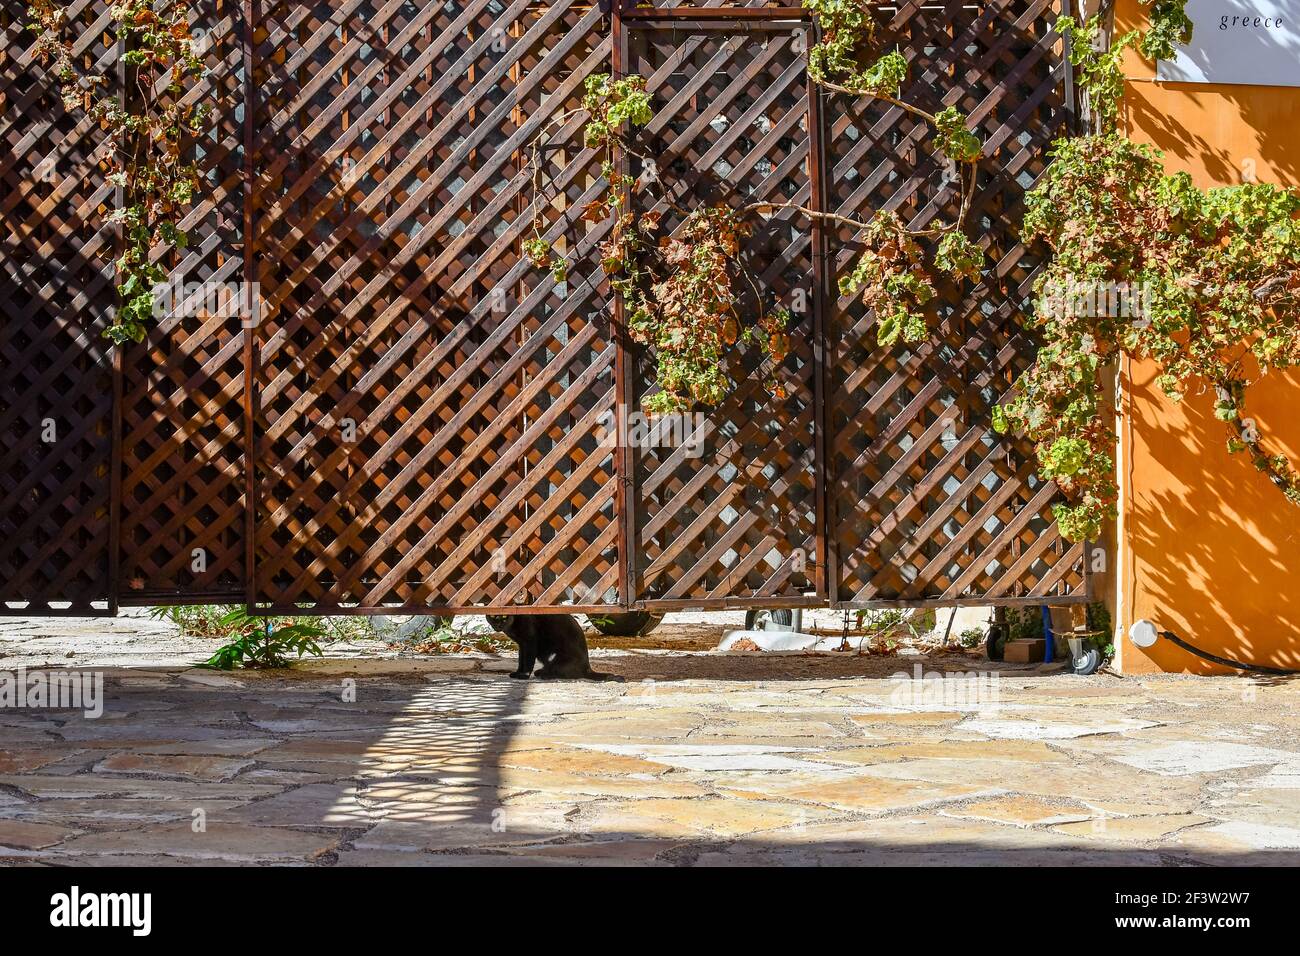 Un gatto nero vagato guarda sotto un cancello a trellis nella districa Plaka di Atene, Grecia. Foto Stock